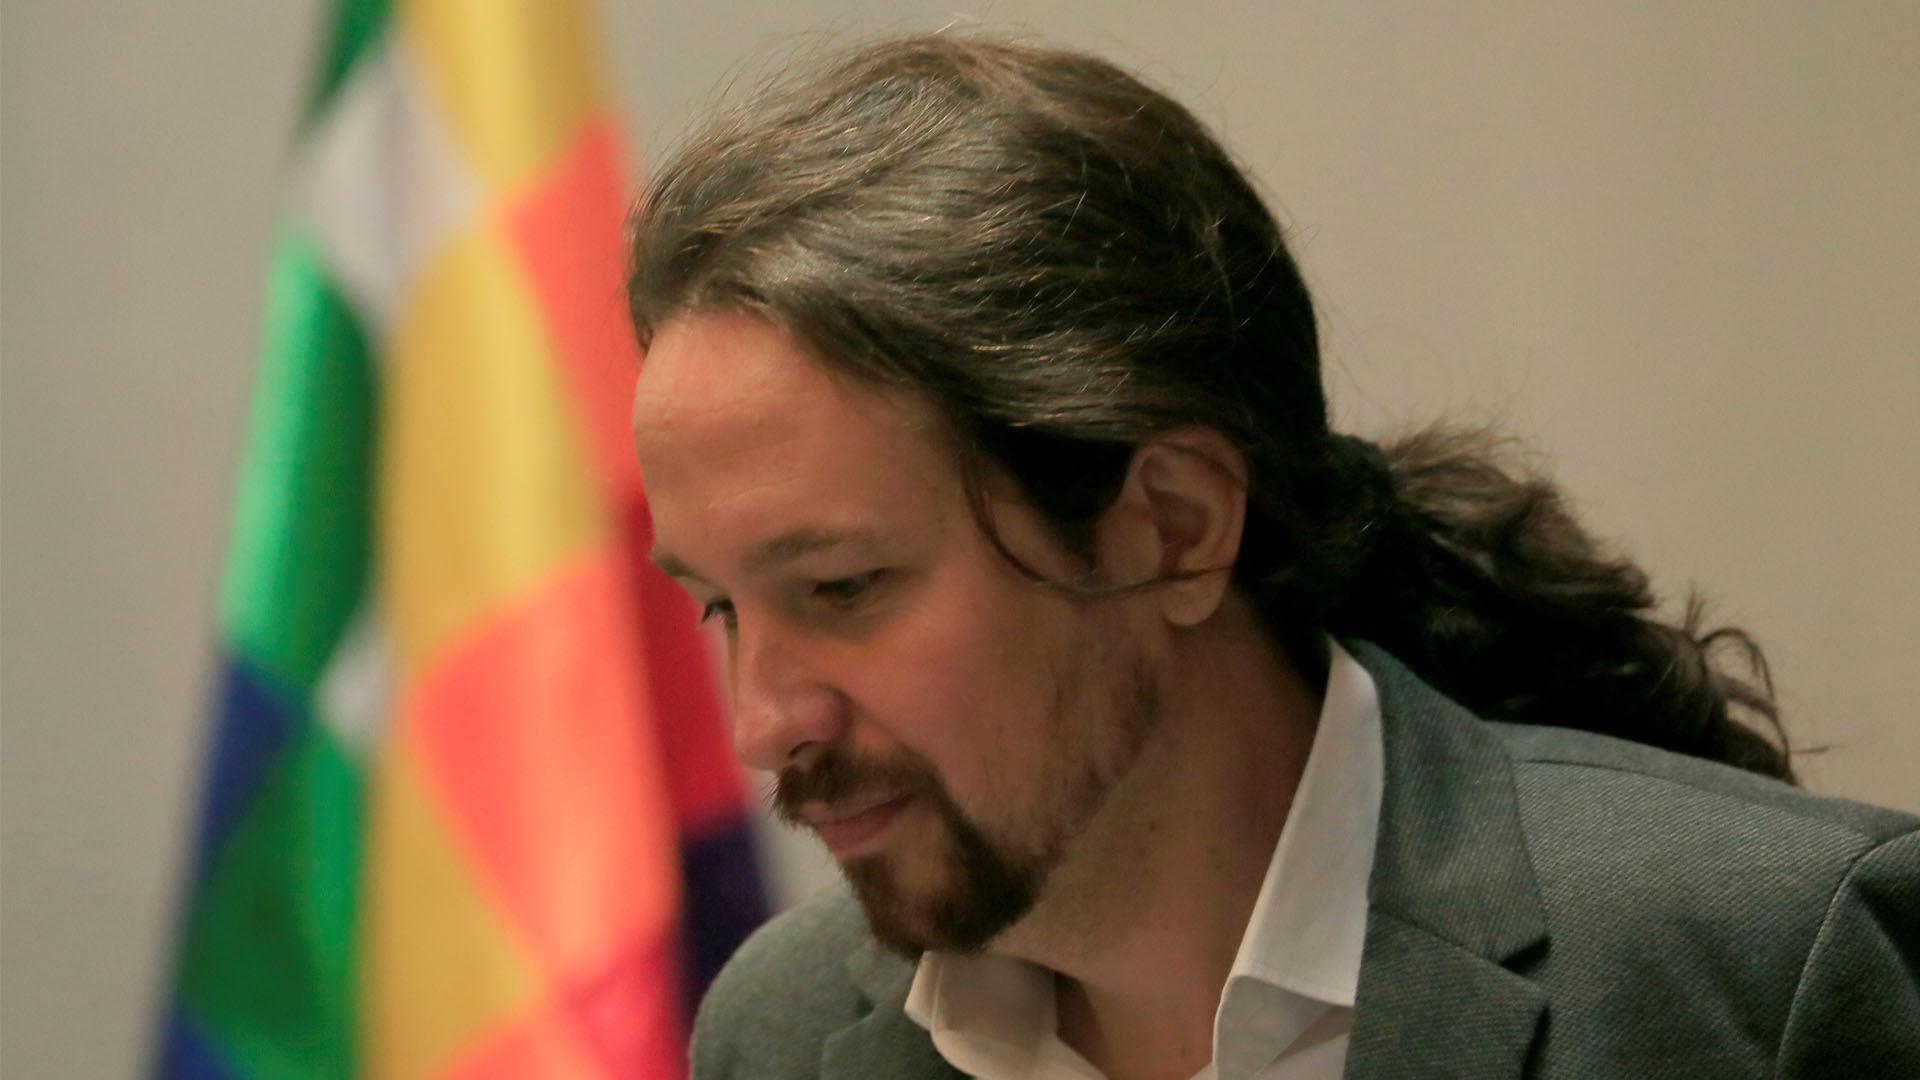 Un antiguo socio de Iglesias le acusa de fundar Podemos con dinero de Venezuela e Irán